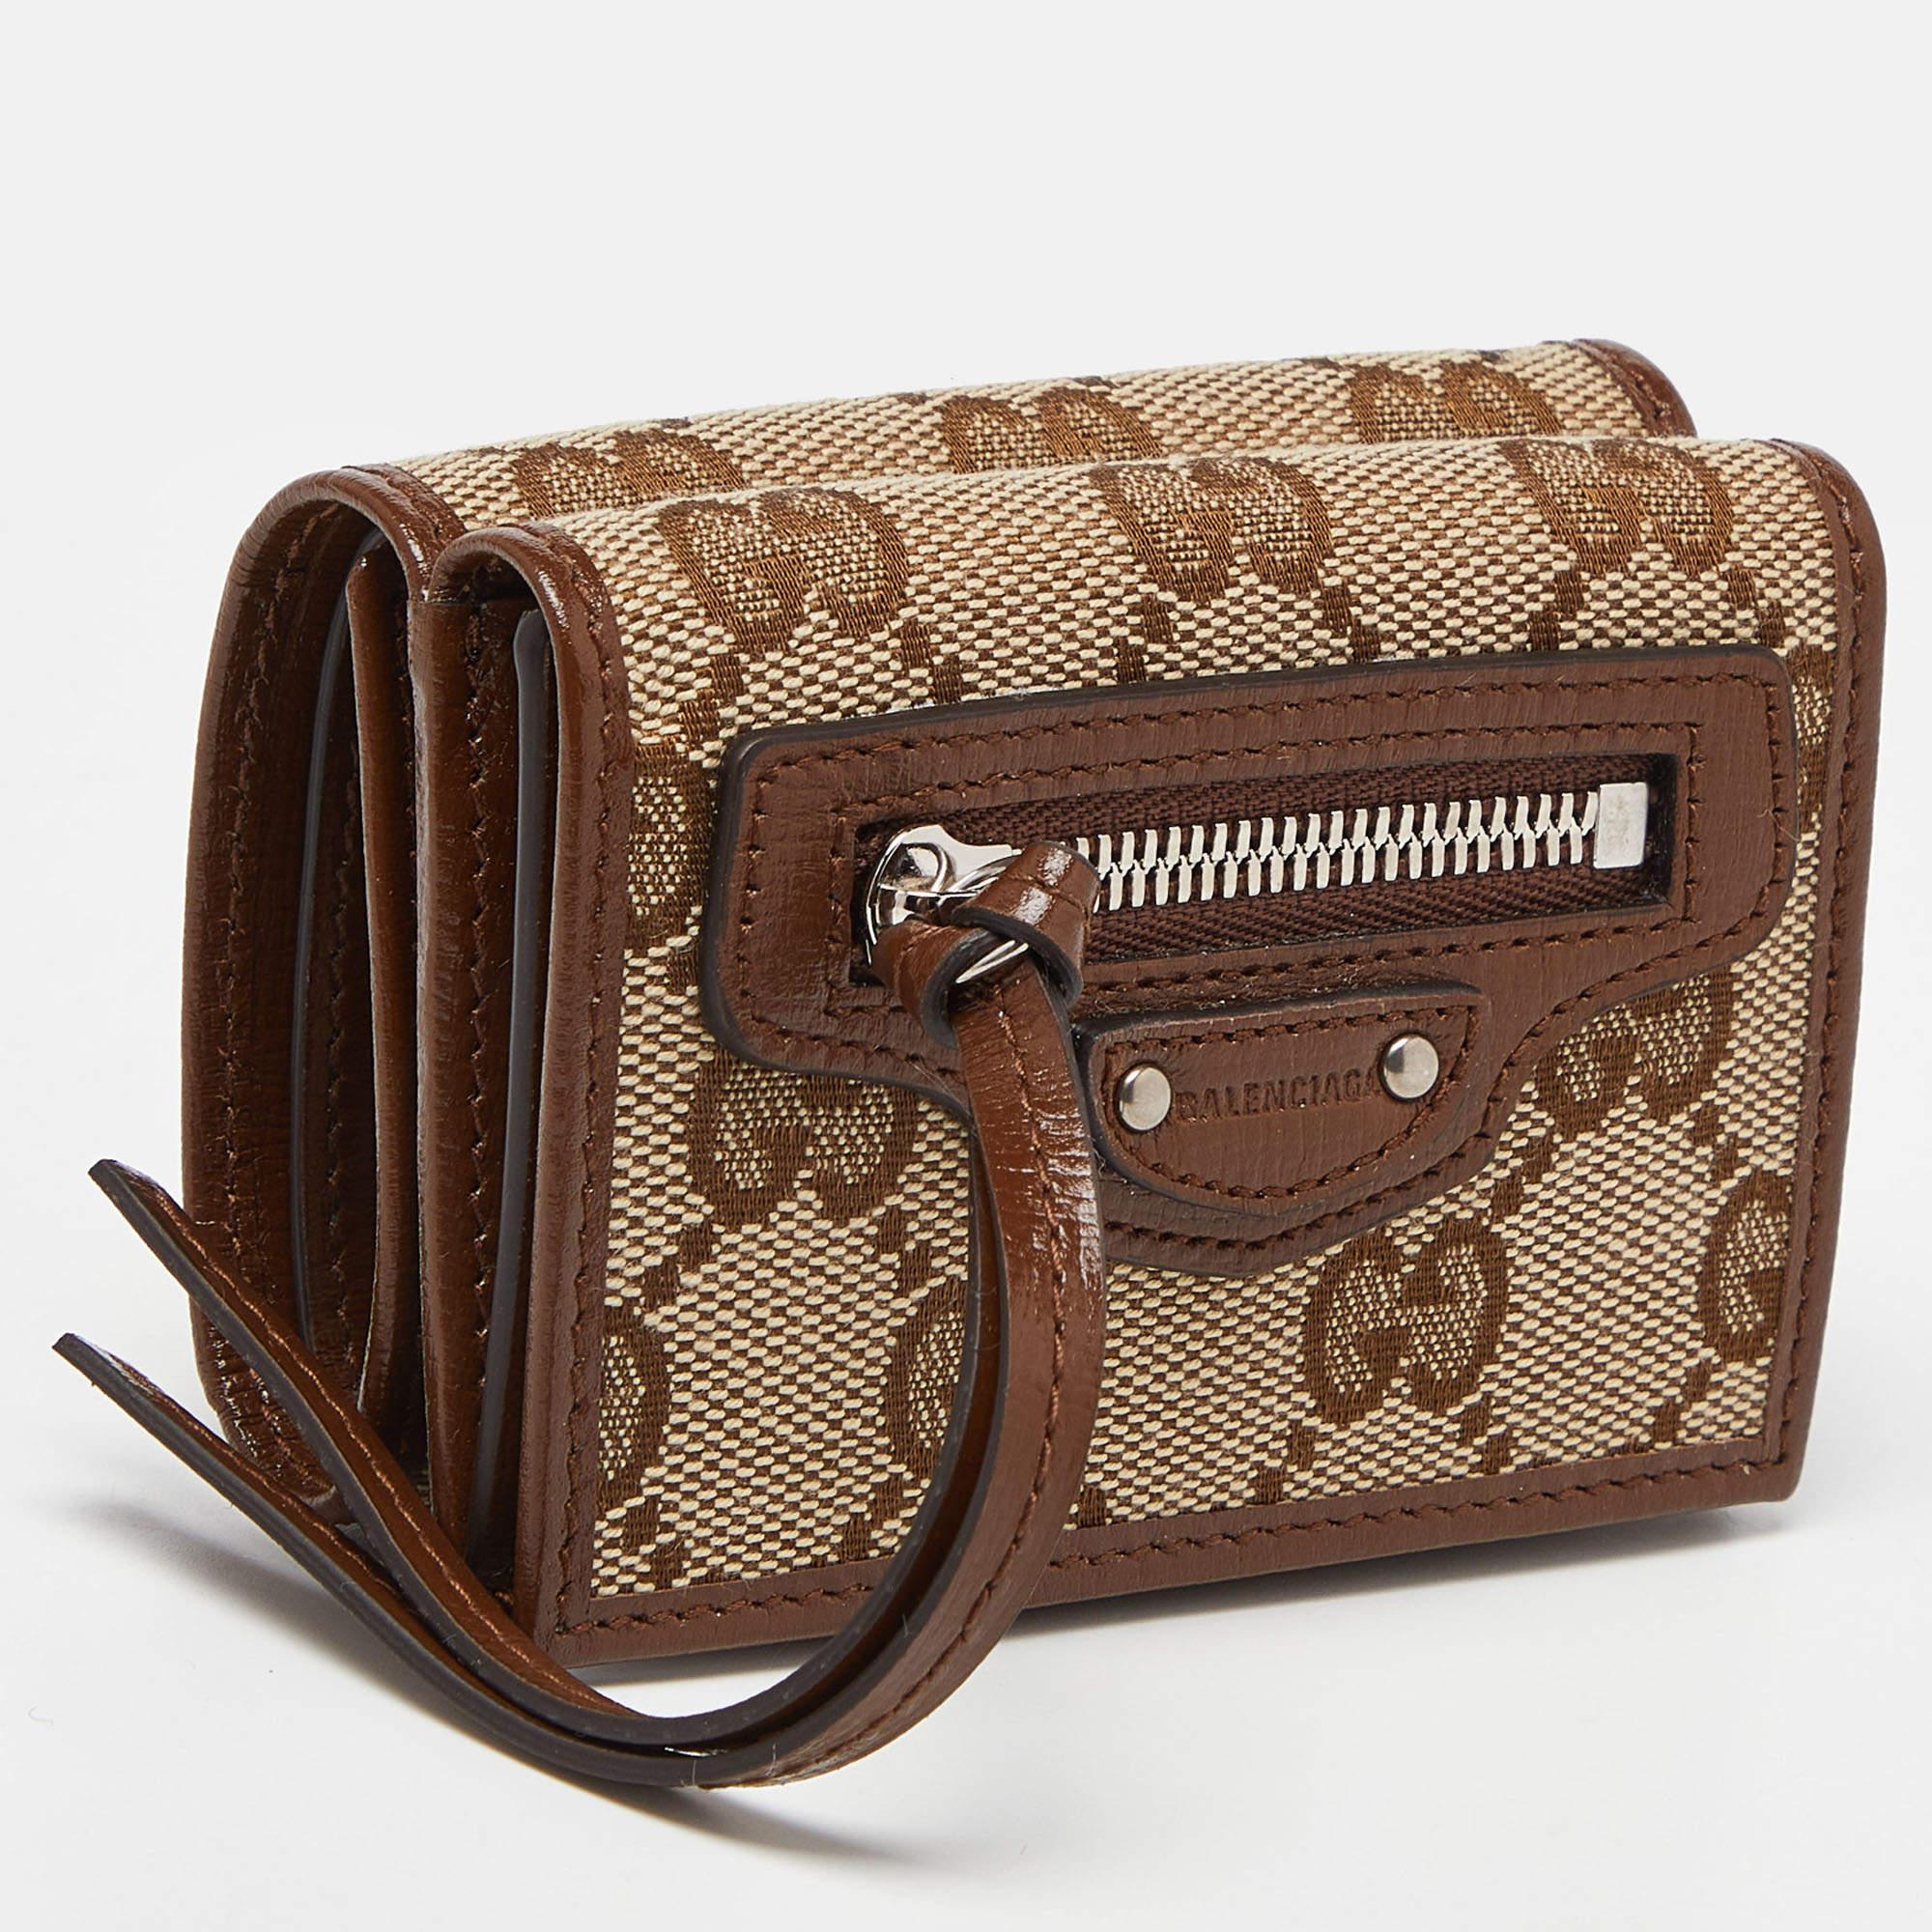 Erleben Sie die harmonische Verschmelzung des kultigen GG Canvas von Gucci und des luxuriösen Leders von Balenciaga in dieser Trifold-Brieftasche. Die Beigetöne, die durch das ineinandergreifende G und das Balenciaga-Logo ergänzt werden, strahlen